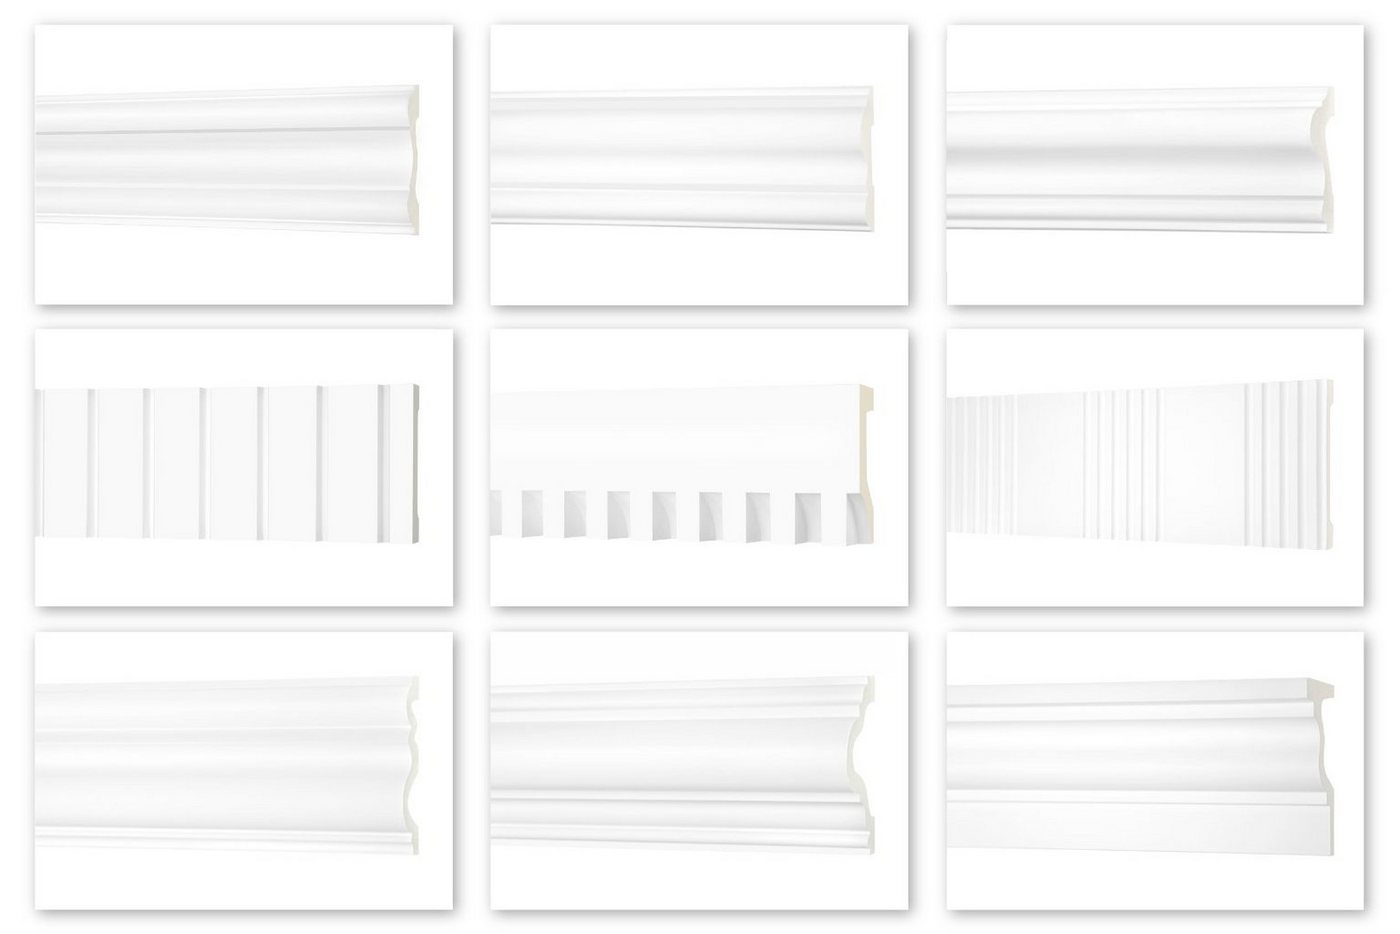 Hexim Perfect Stuckleiste AD 346, Flachleiste aus PU Serie 2 - Stuckleiste glatt, weißes Zierprofil, hart & stoßfest - Wandleiste vorgrundiert von Hexim Perfect